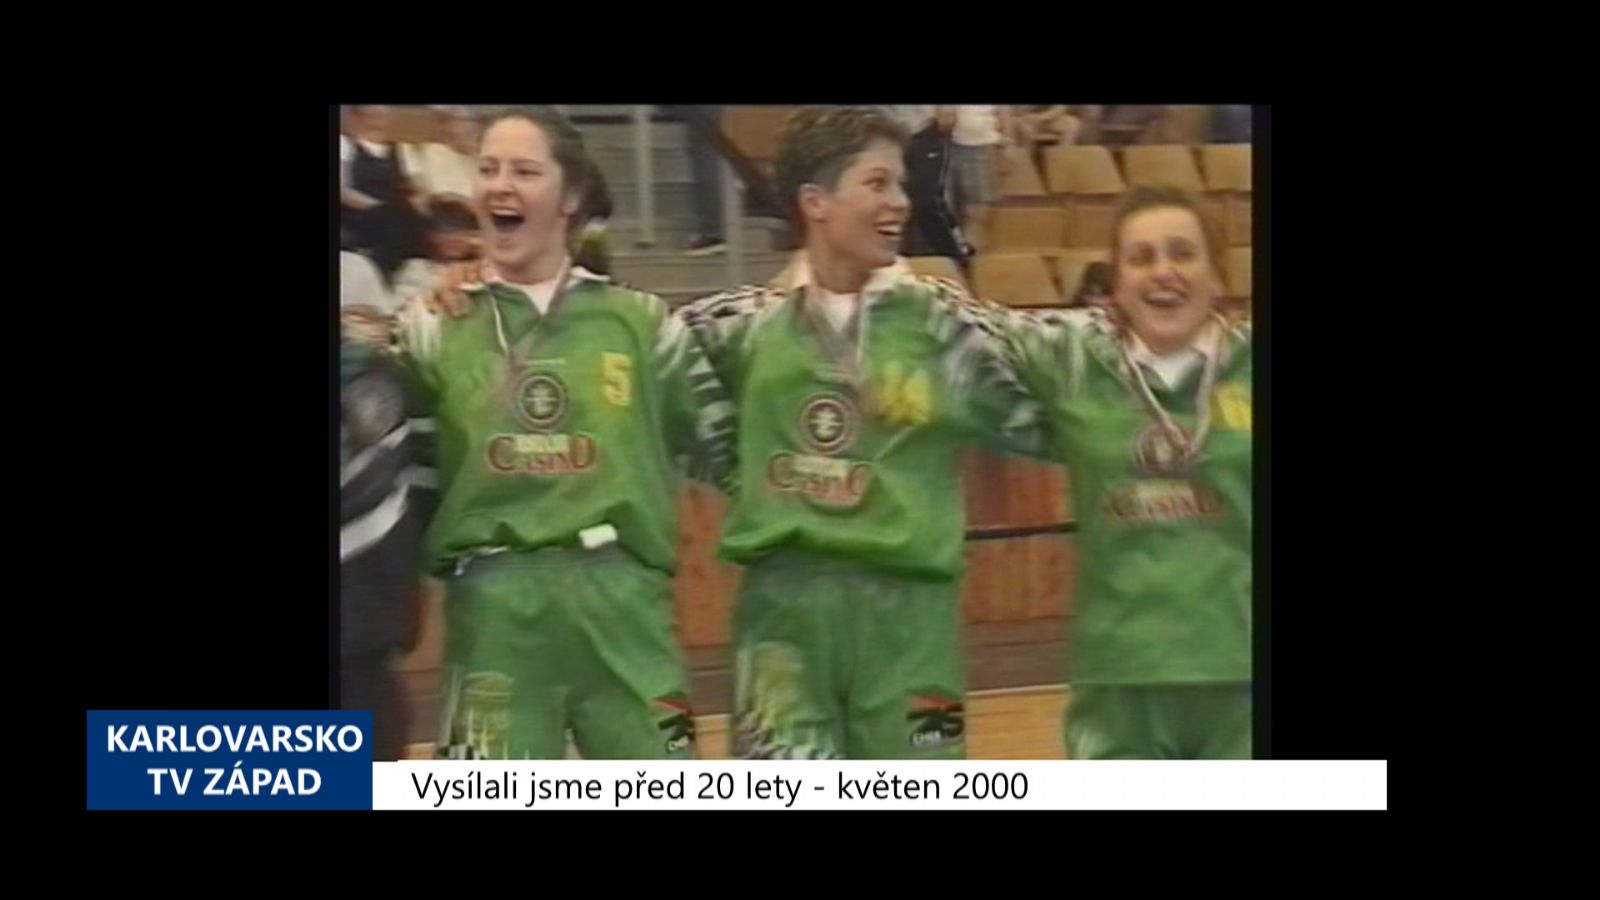 2000 – Cheb: Domácí obsadili druhé místo v házenkářské extralize (TV Západ) 